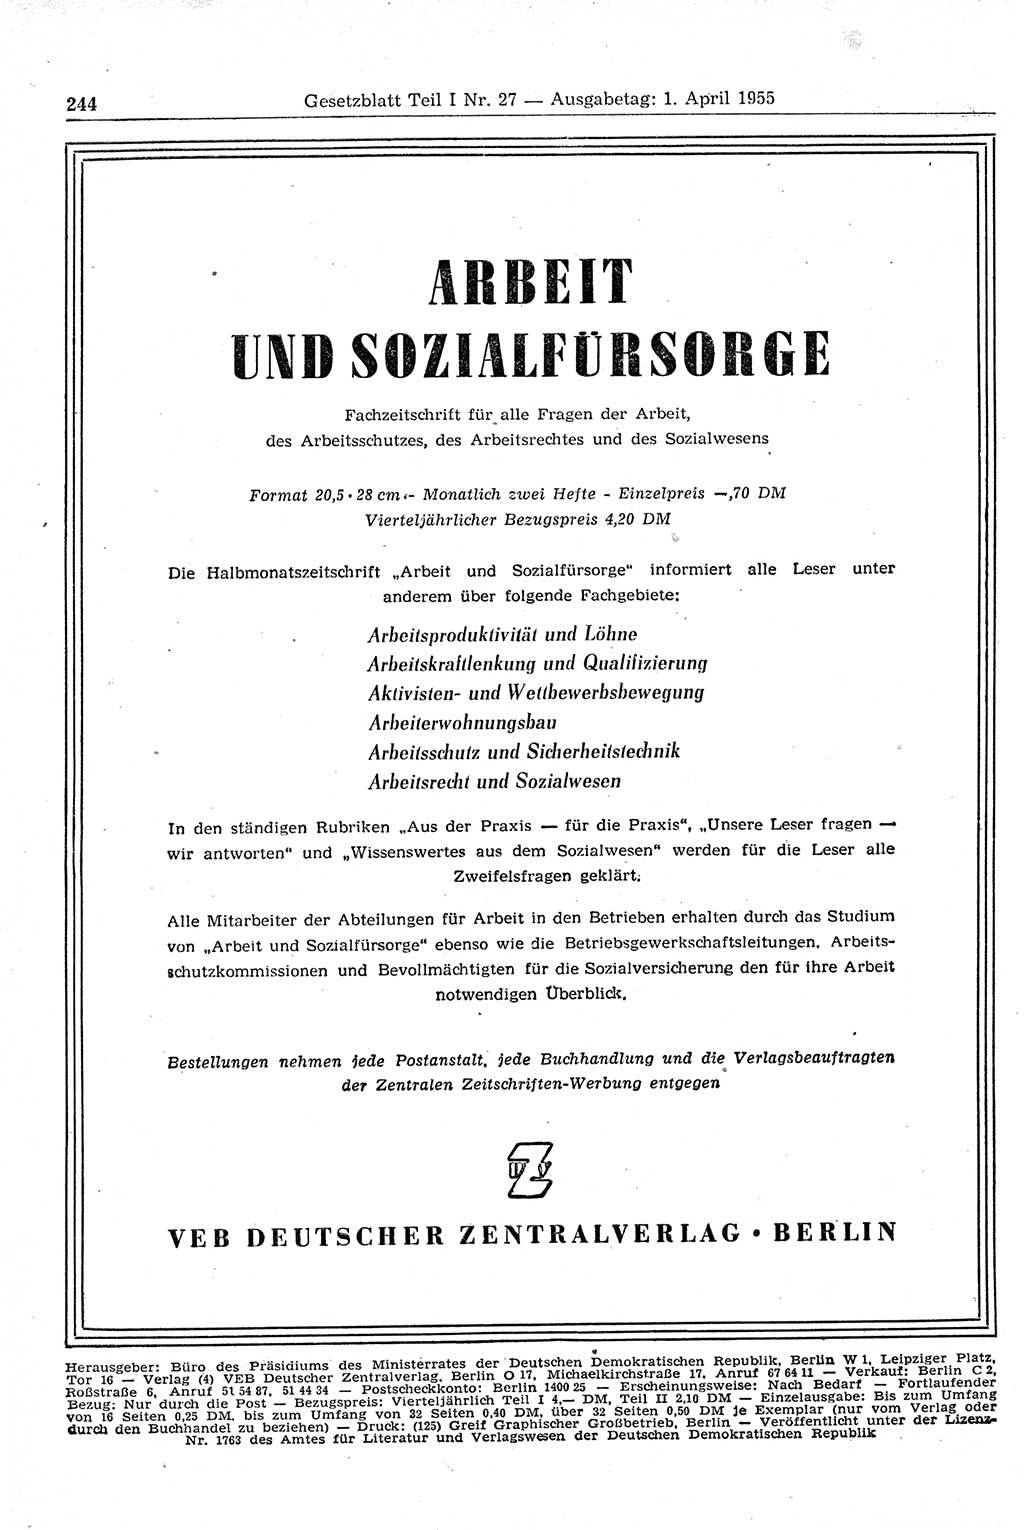 Gesetzblatt (GBl.) der Deutschen Demokratischen Republik (DDR) Teil Ⅰ 1955, Seite 244 (GBl. DDR Ⅰ 1955, S. 244)